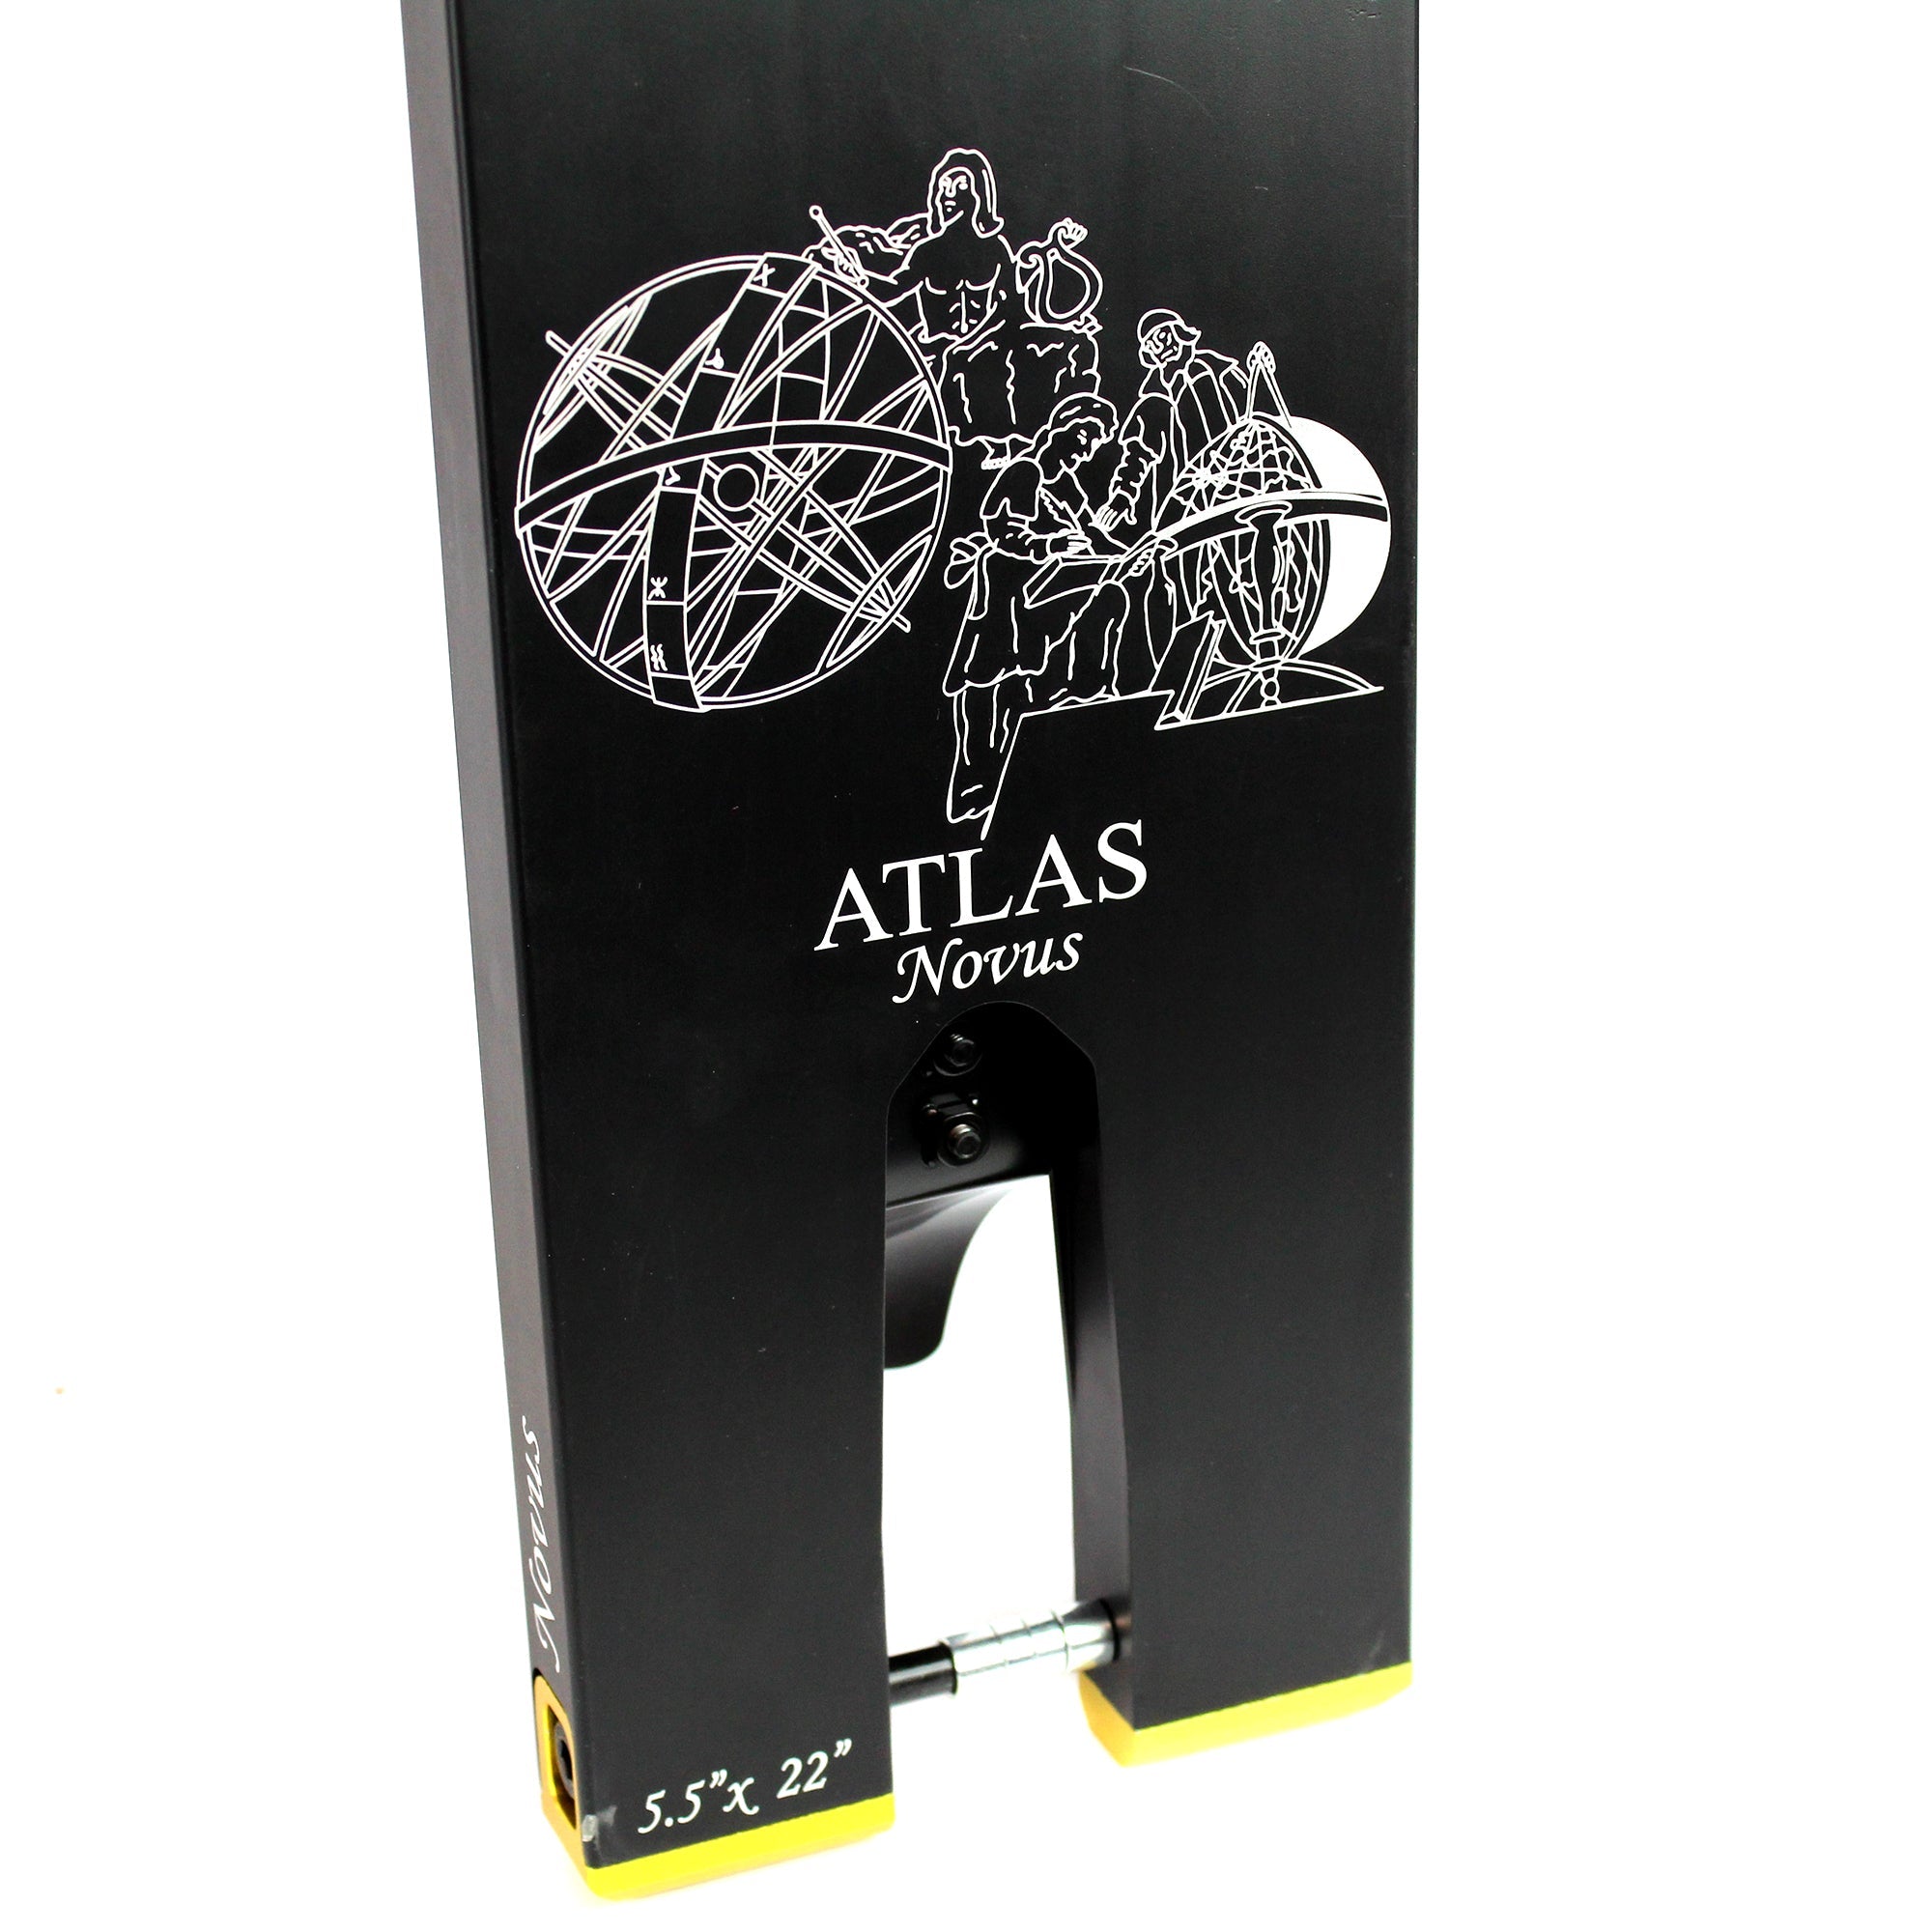 North Atlas Novus 5.5" - Deck